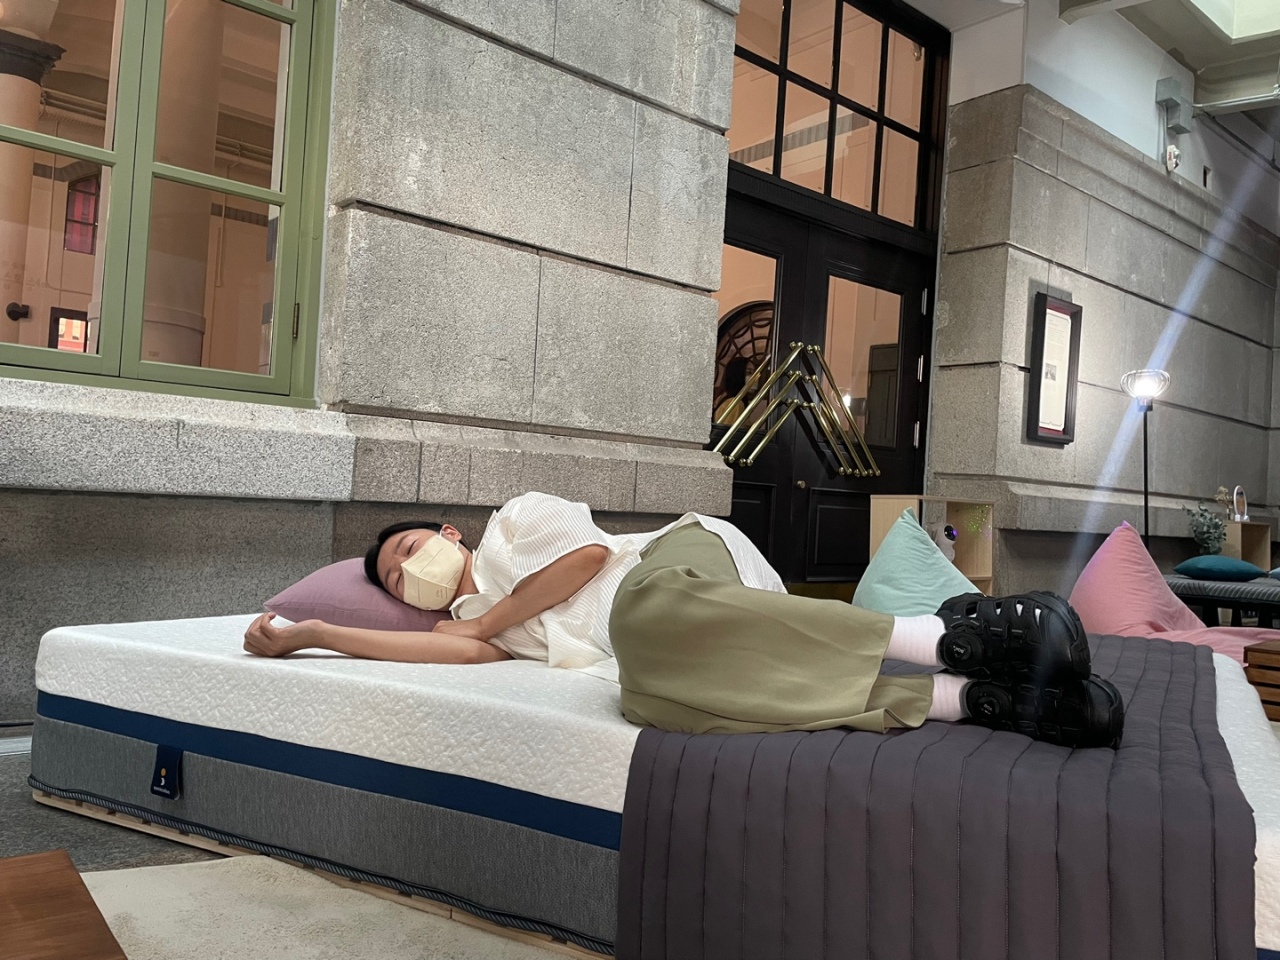 문화역서울 284에서 열린 '나의 잠' 전시회에서 한 관람객이 휴식을 취하고 있다. (박가영/코리아헤럴드)